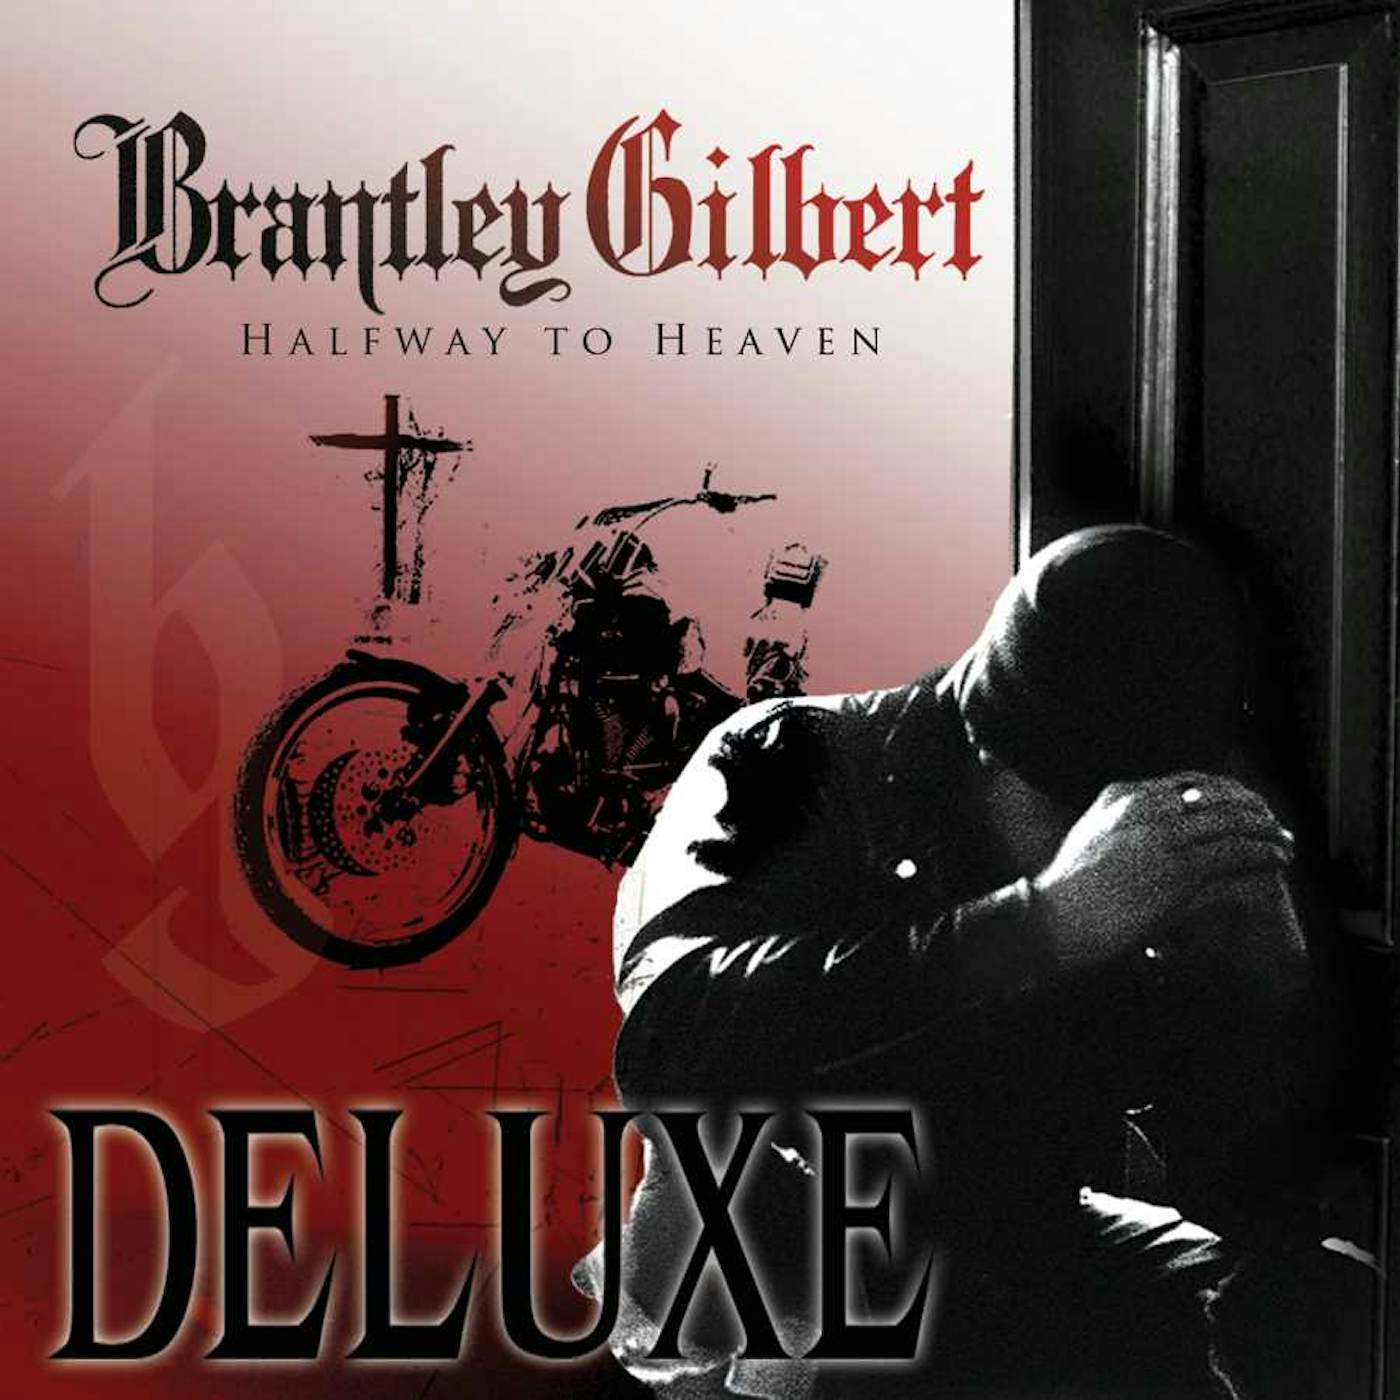 Brantley Gilbert HALFWAY TO HEAVEN (2LP) Vinyl Record